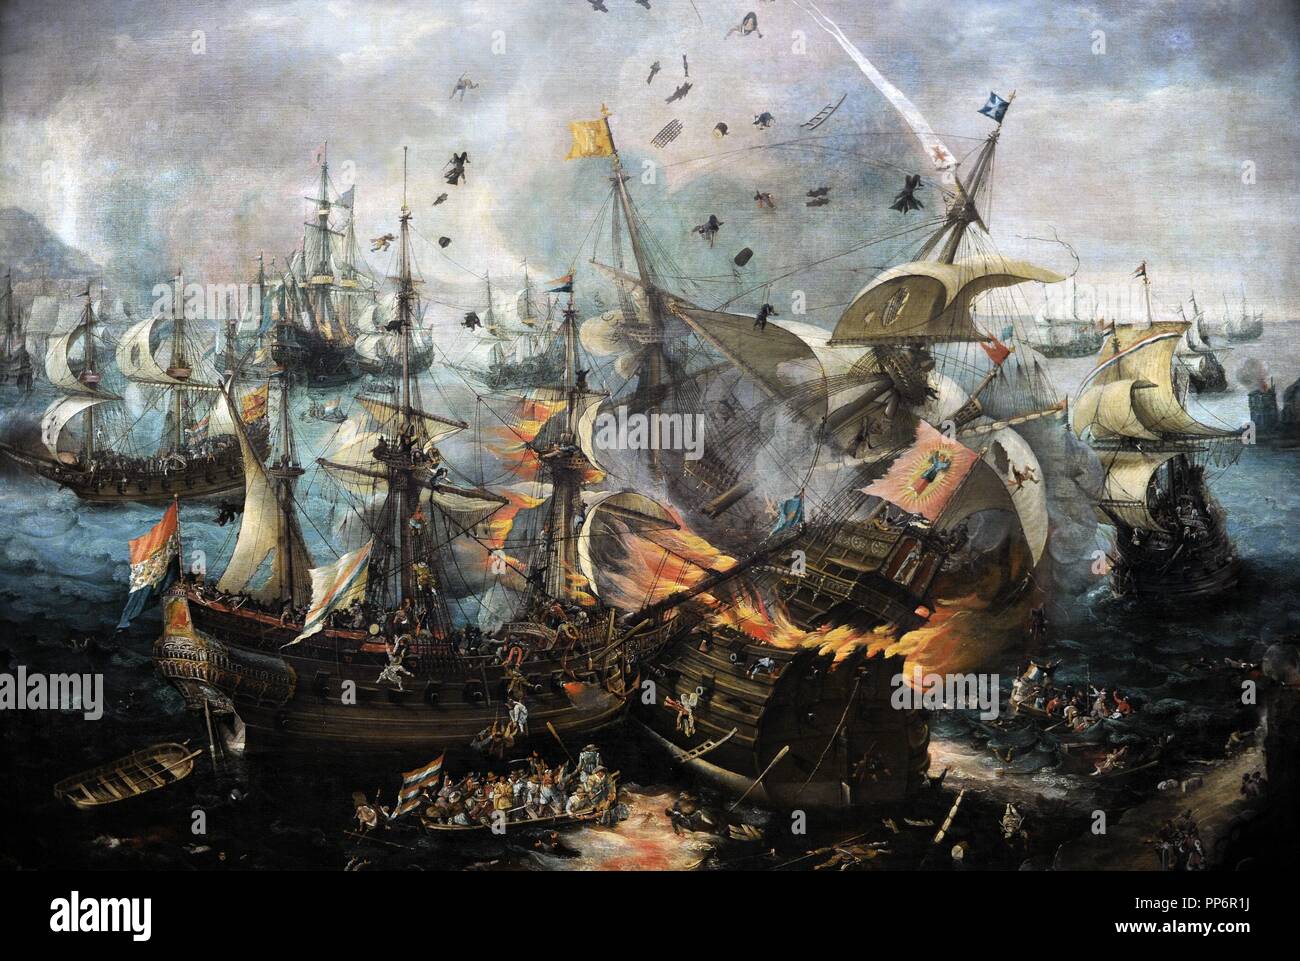 Cornelis Claesz Van Wieringen (c.1577-1633). Peintre hollandais. L'explosion de la vedette espagnole lors de la bataille de Gibraltar, c.1621. Rijksmuseum. Amsterdam. La Hollande. Banque D'Images